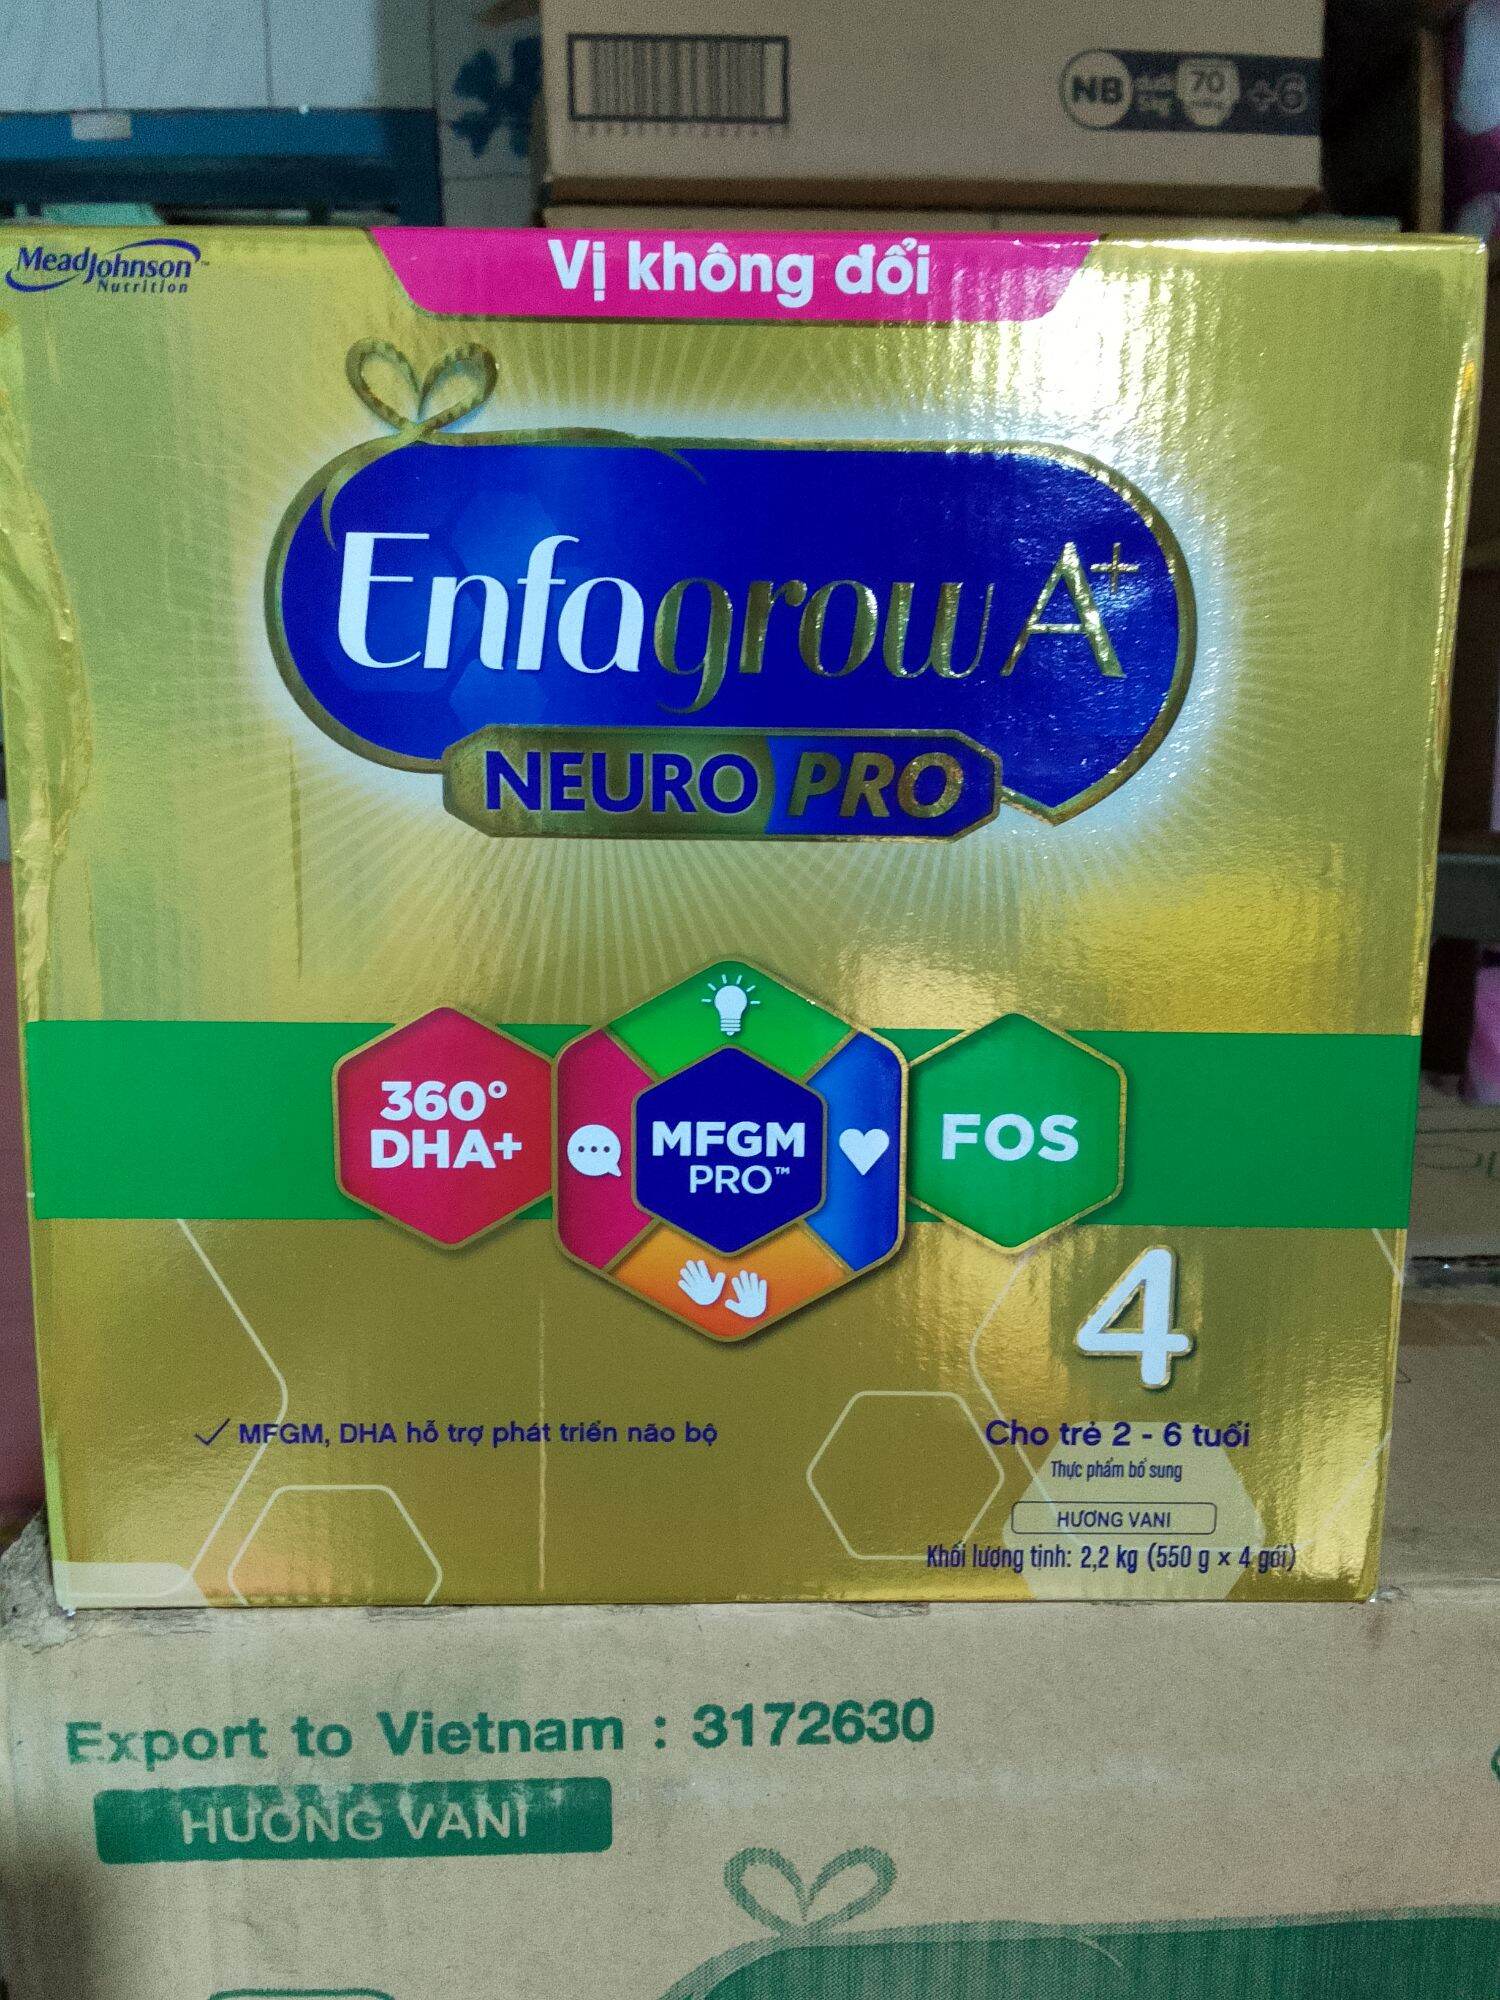 Sữa bột Enfagrow A+ Neuropro 4 vị không đổi với dưỡng chất DHA & MFGM cho